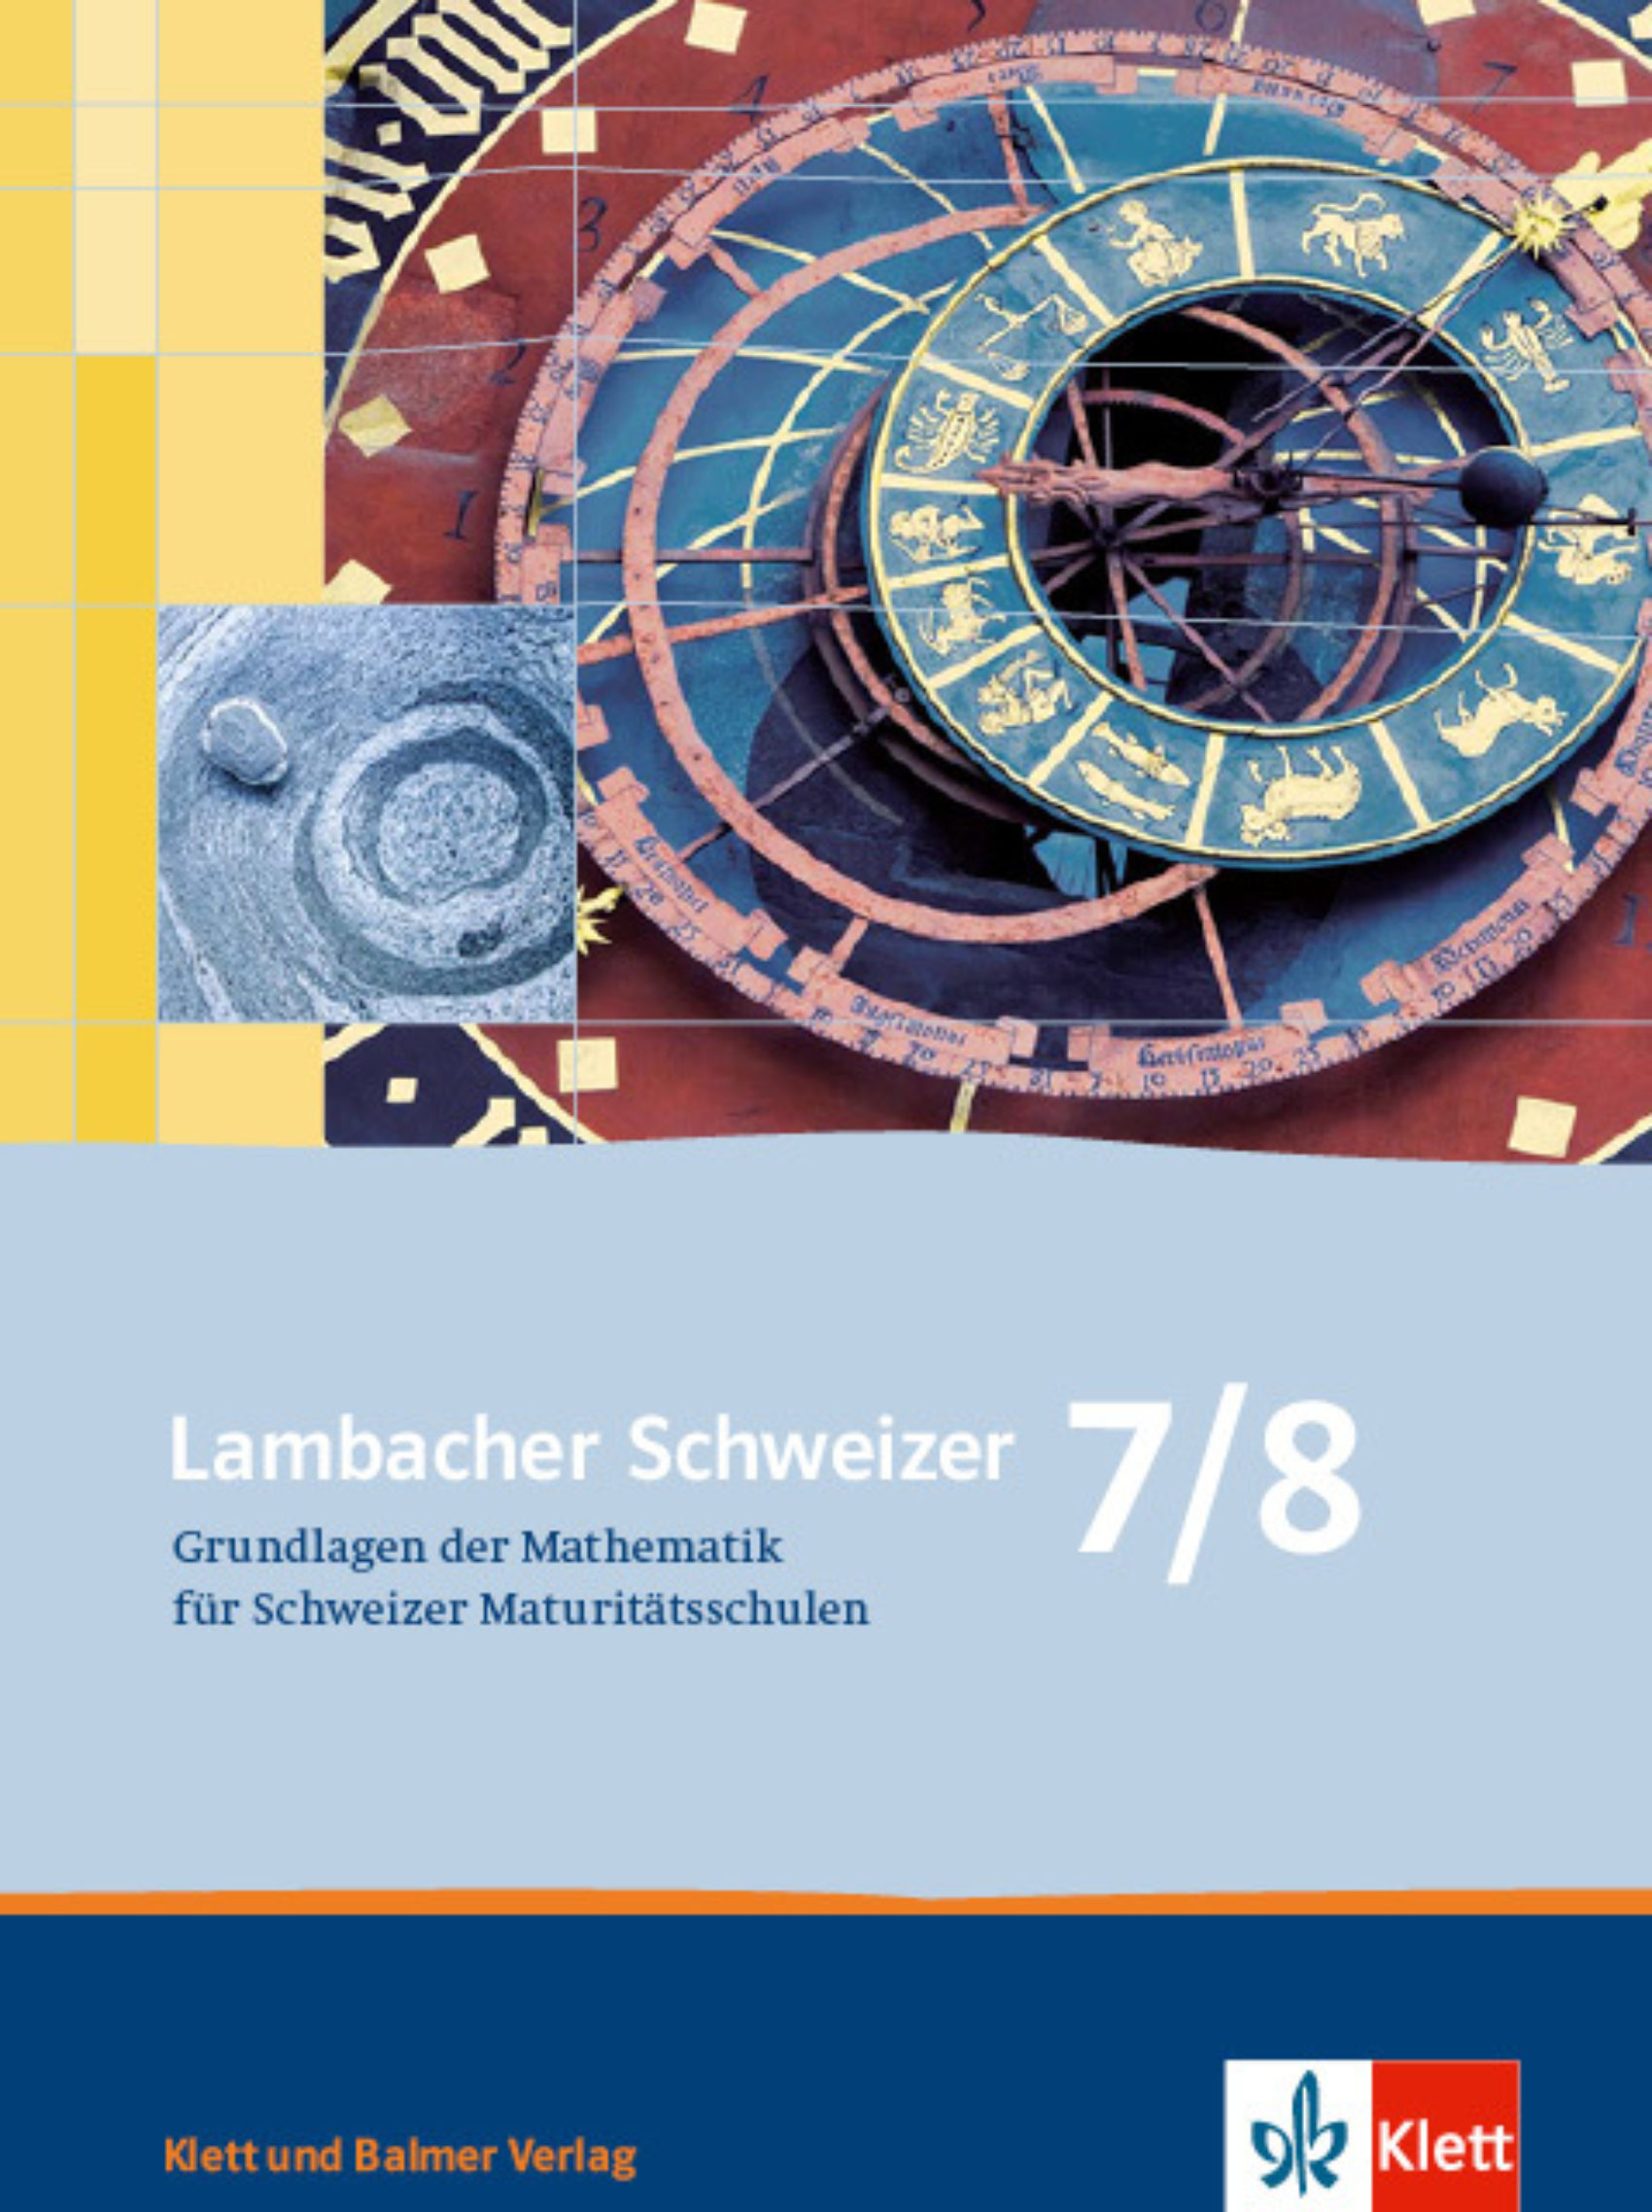 Schulbuch lambacher schweizer 7 8 978 3 264 83981 4 klett und balmer